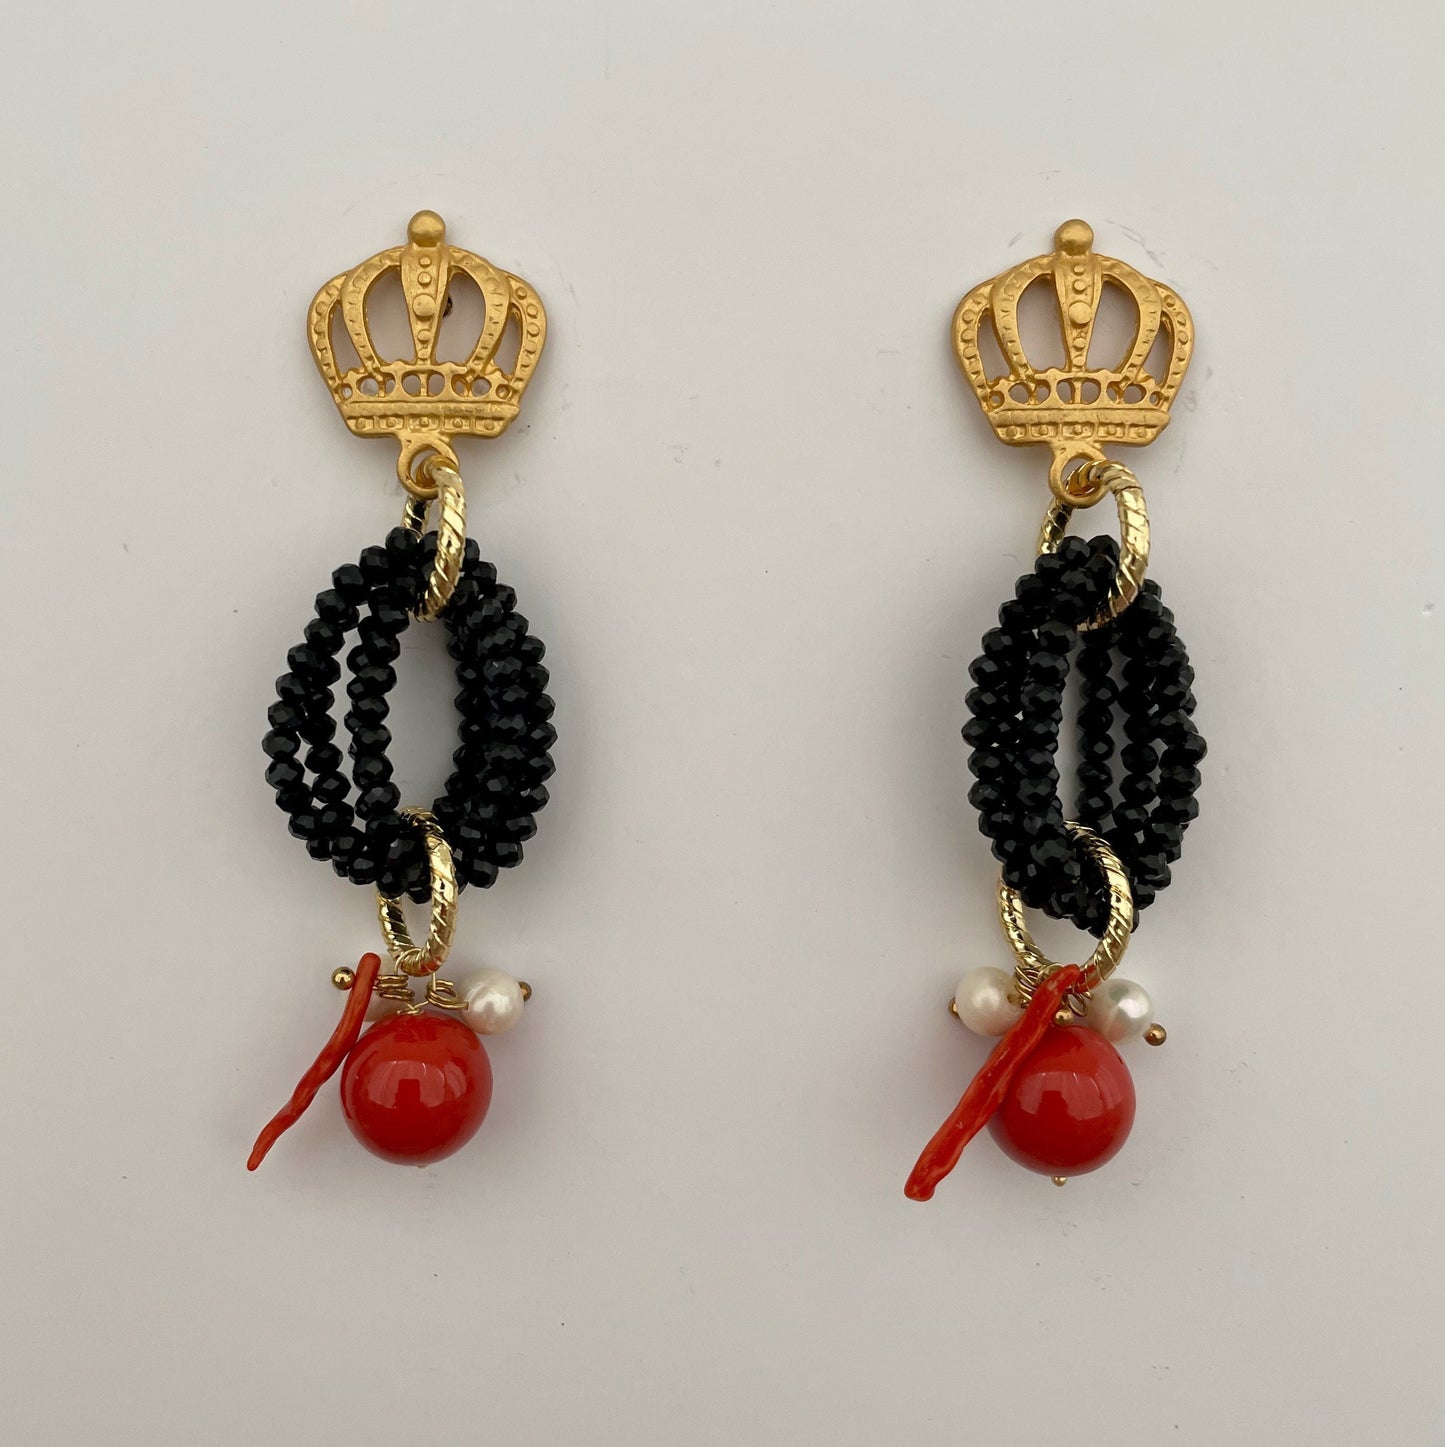 Orecchini con corona in zama, cristalli neri e perle maiorca rosse.(